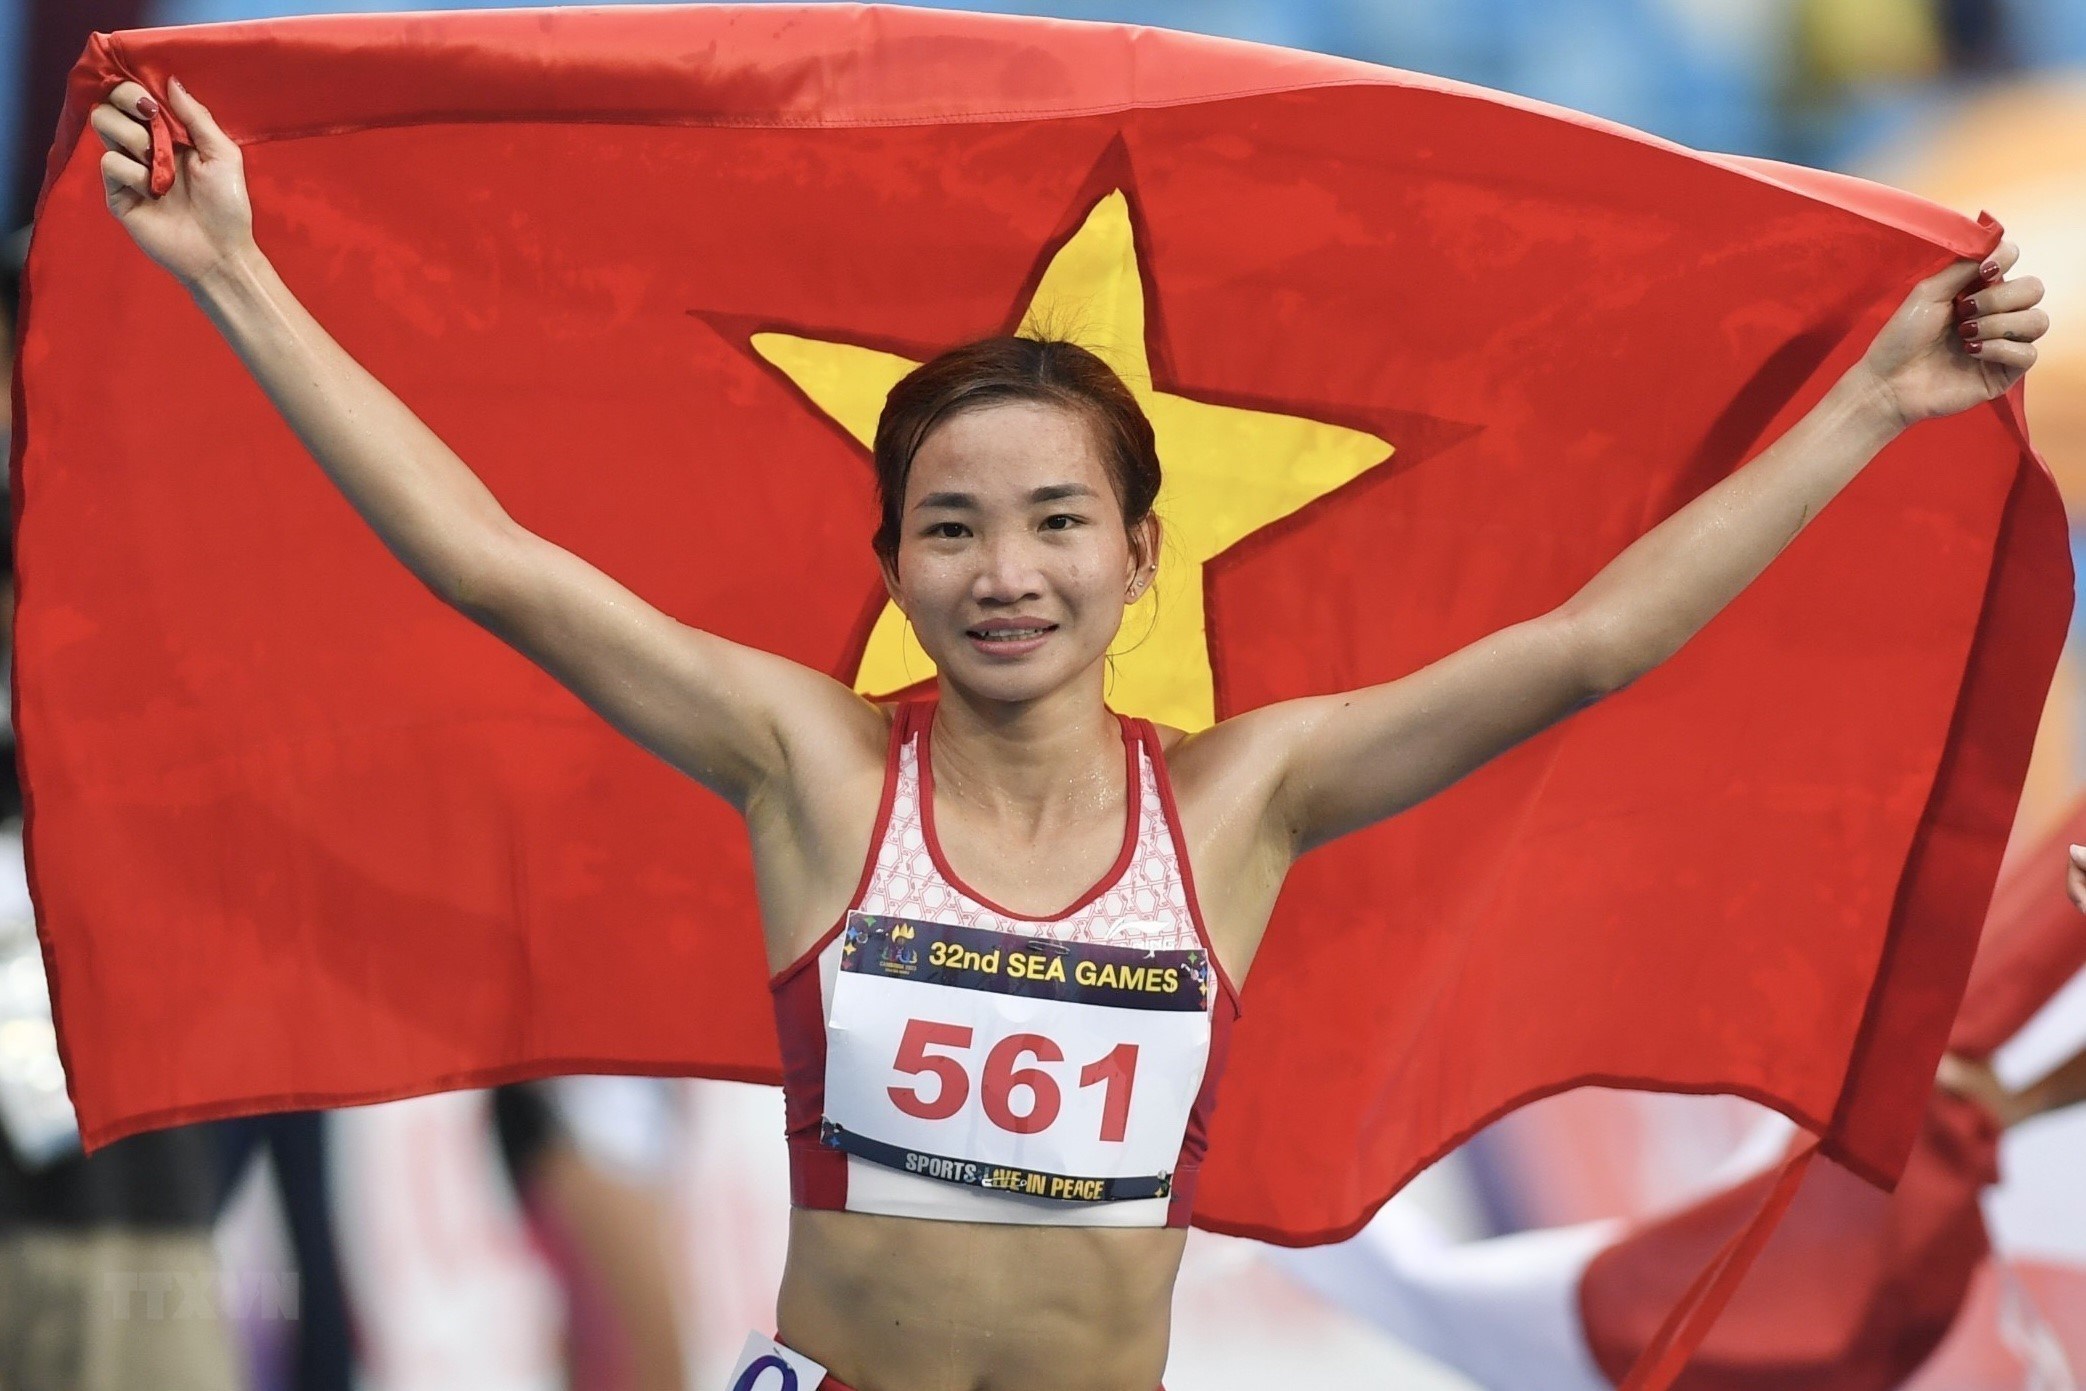 Siêu nhân' Nguyễn Thị Oanh làm nên lịch sử với HCV 10.000m | Thể thao |  Vietnam+ (VietnamPlus)